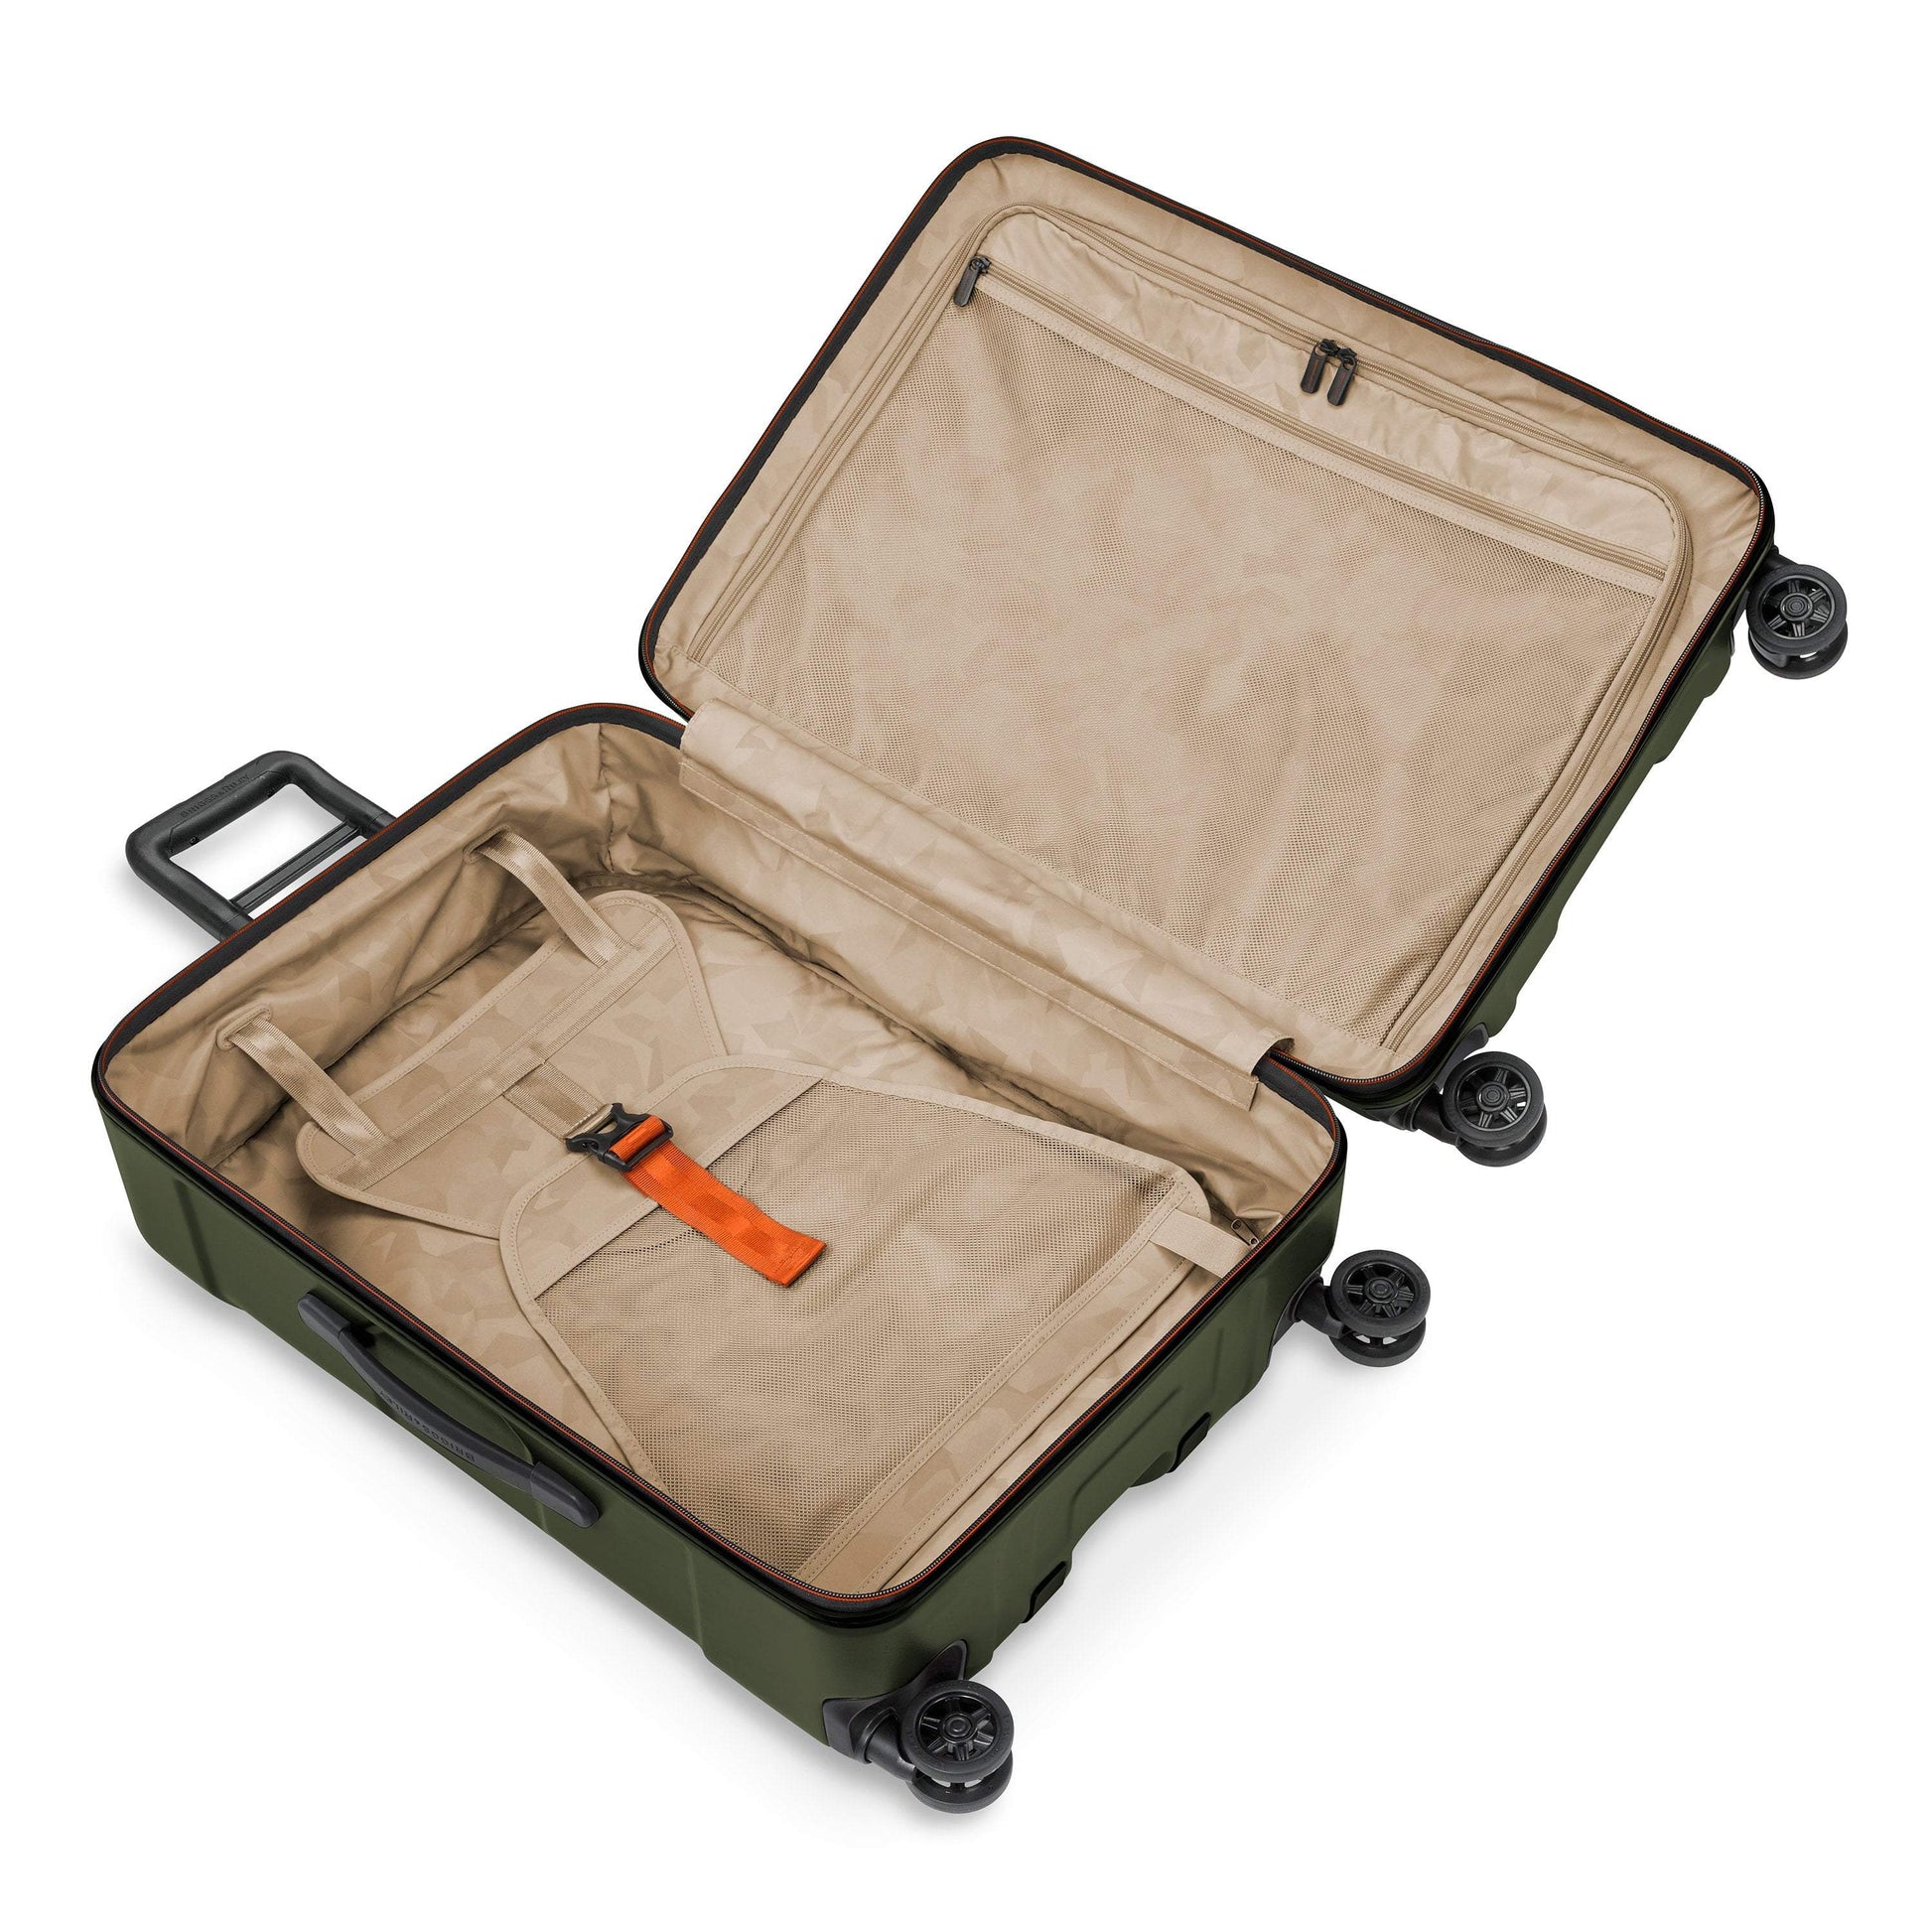 Briggs & Riley Torq Medium Spinner Luggage